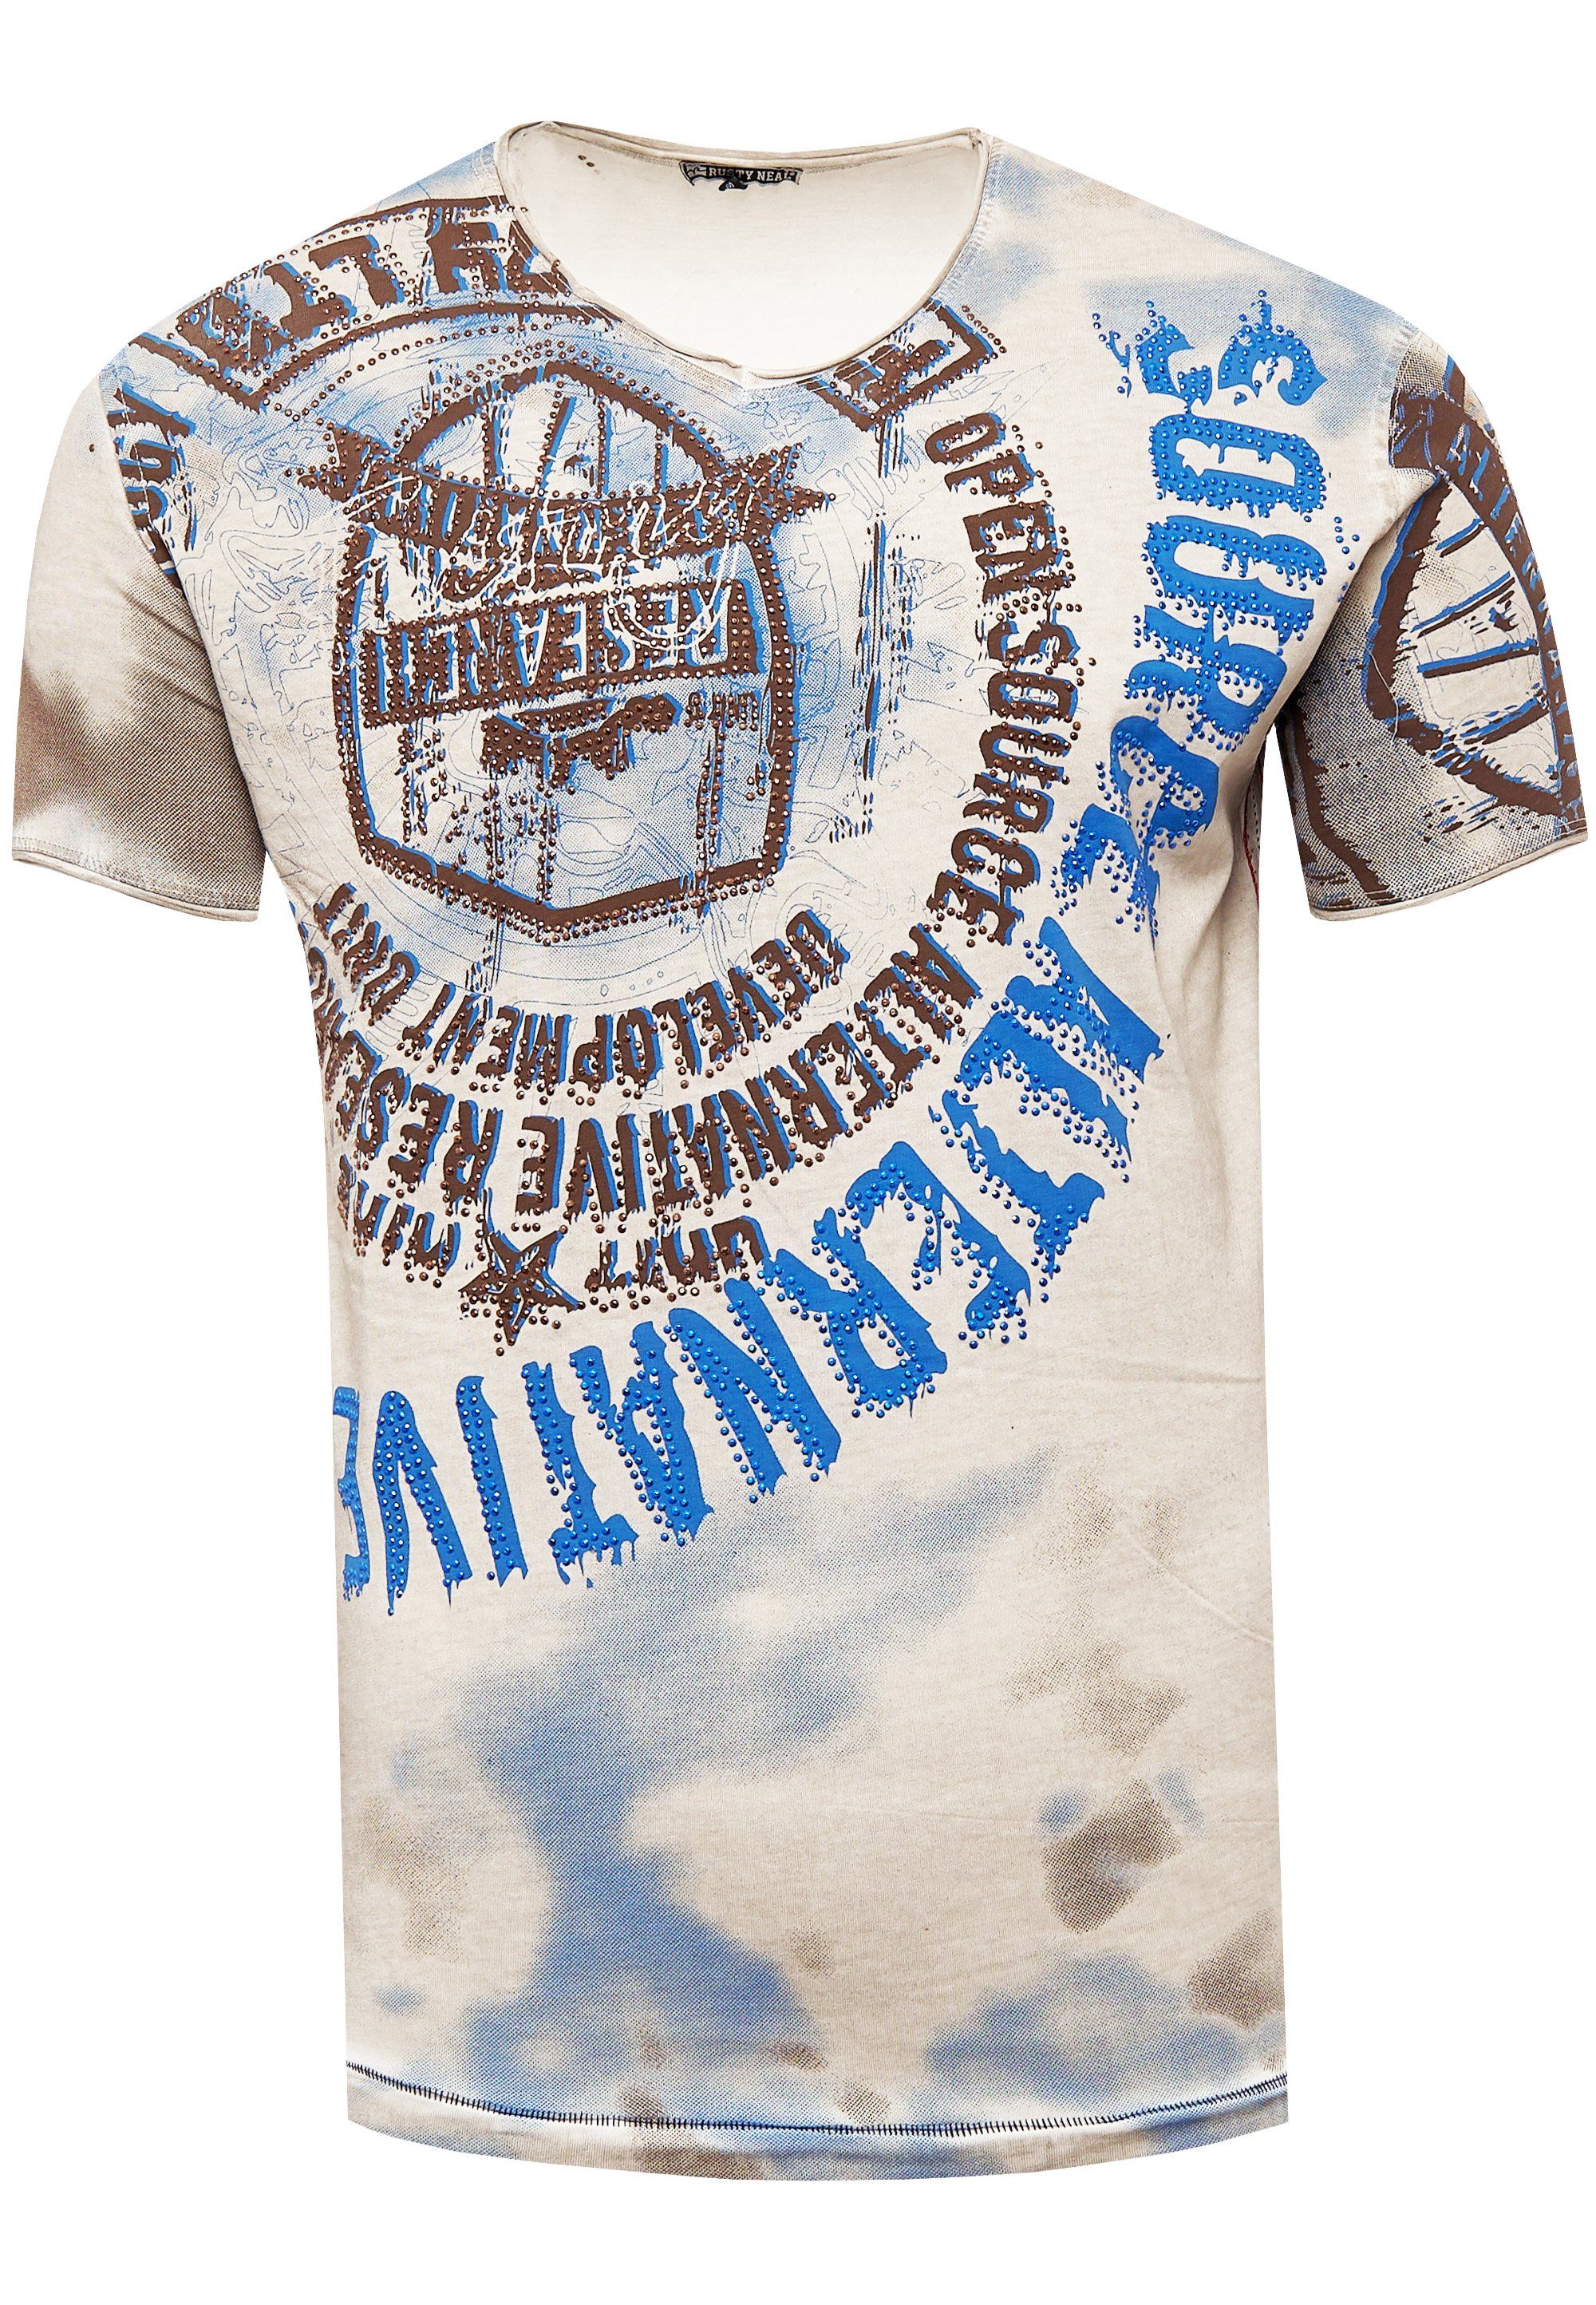 Rusty Neal T-Shirt beige-blau und Frontprint Strasssteinen mit